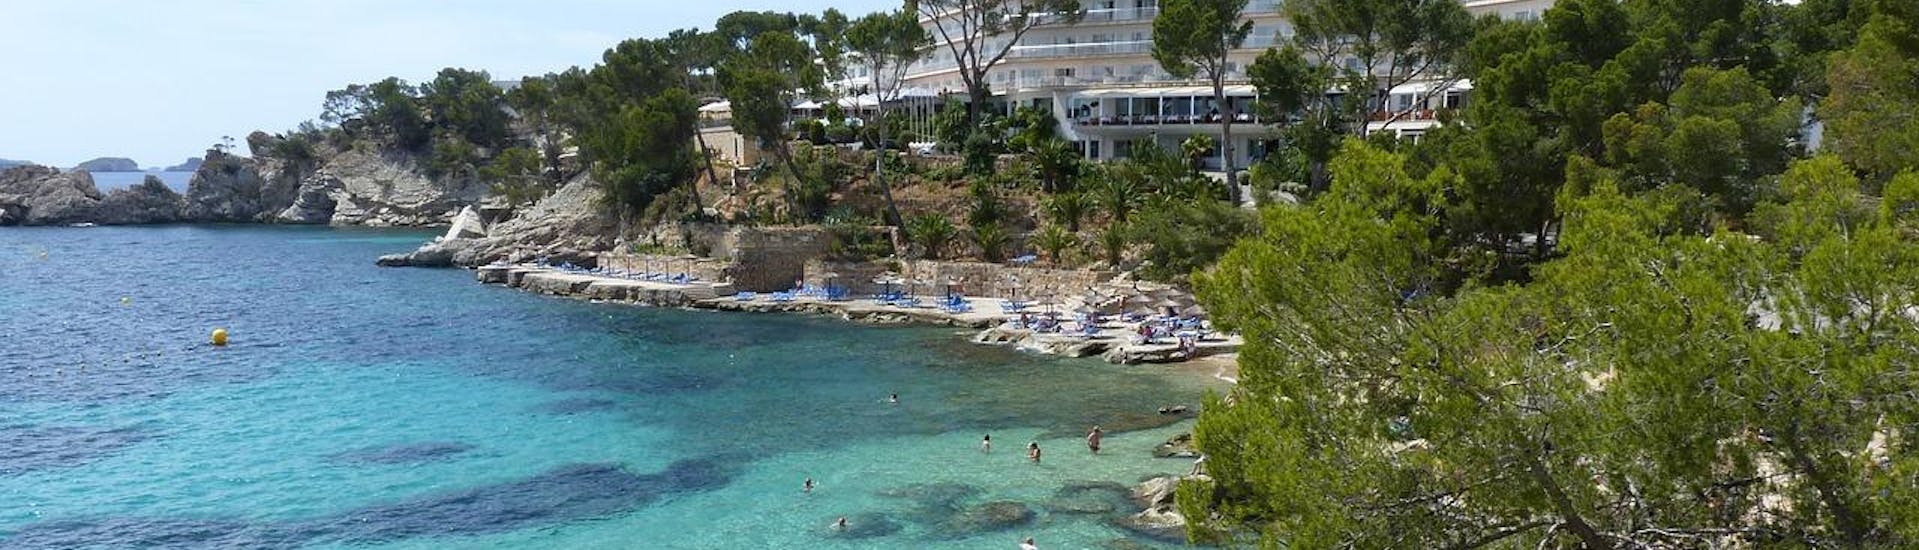 Una de las principales y más bellas playas de Fornells en Menorca.